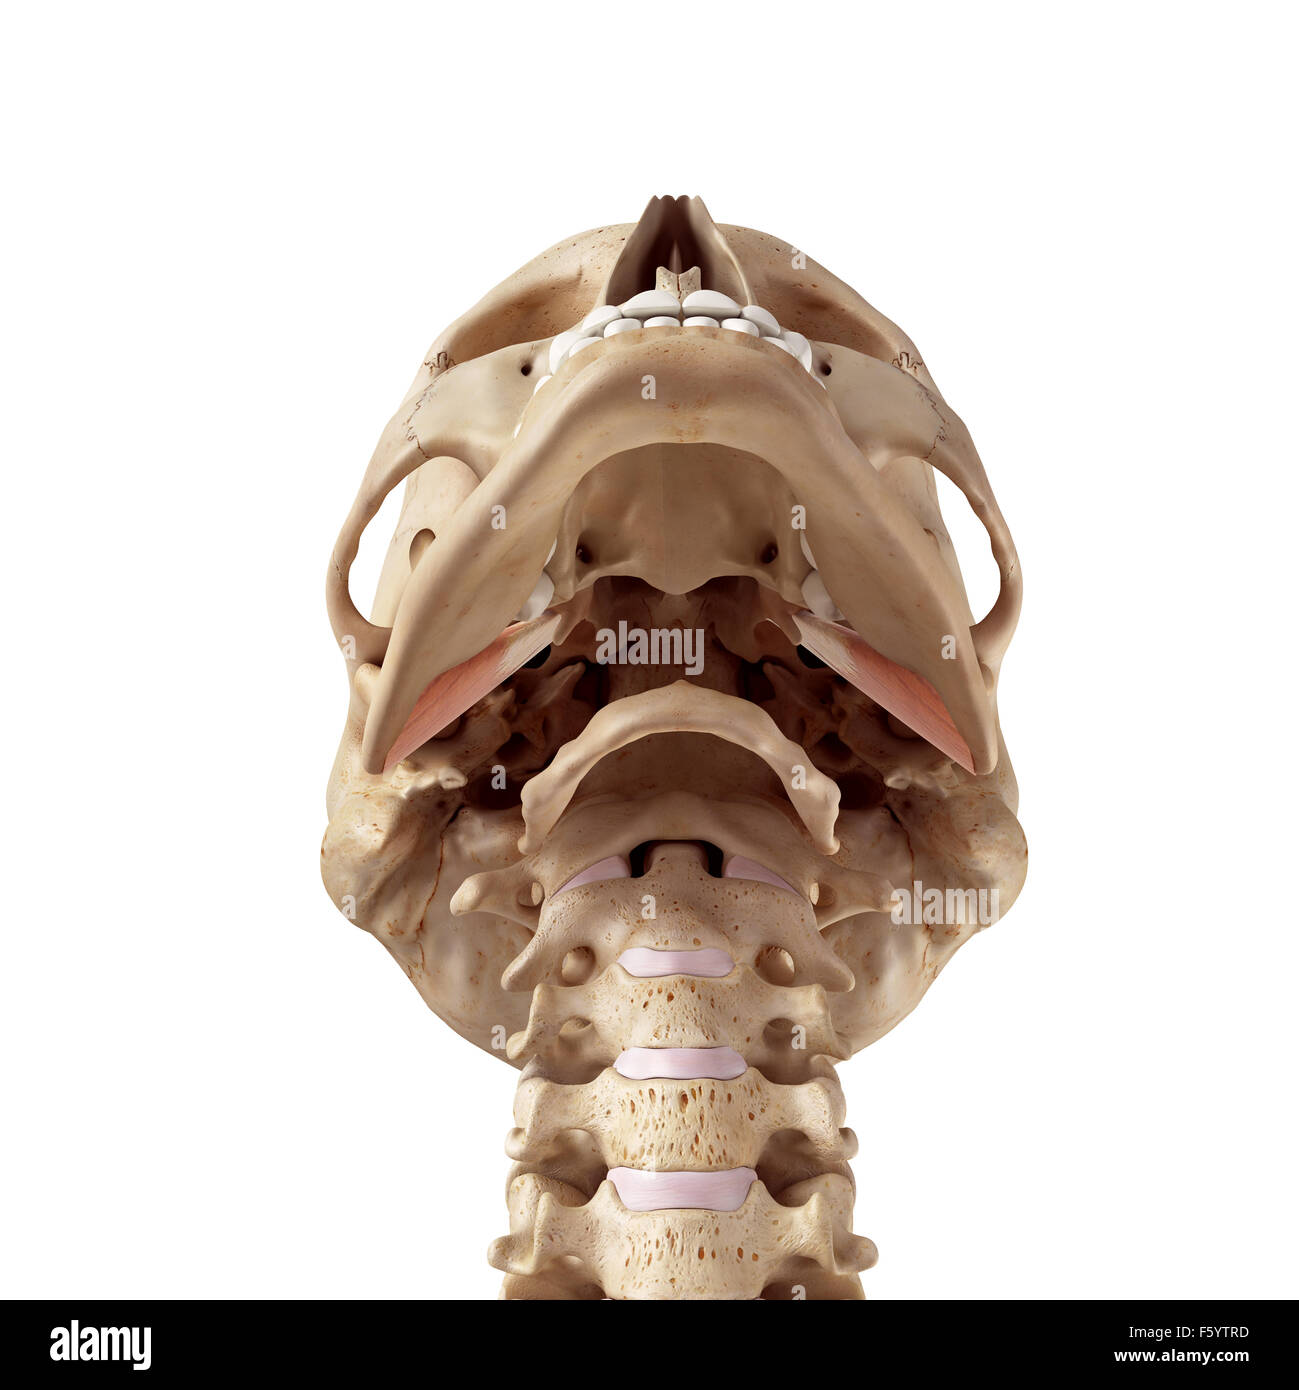 Ilustración de la precisión médica pterygoideus externo Foto de stock